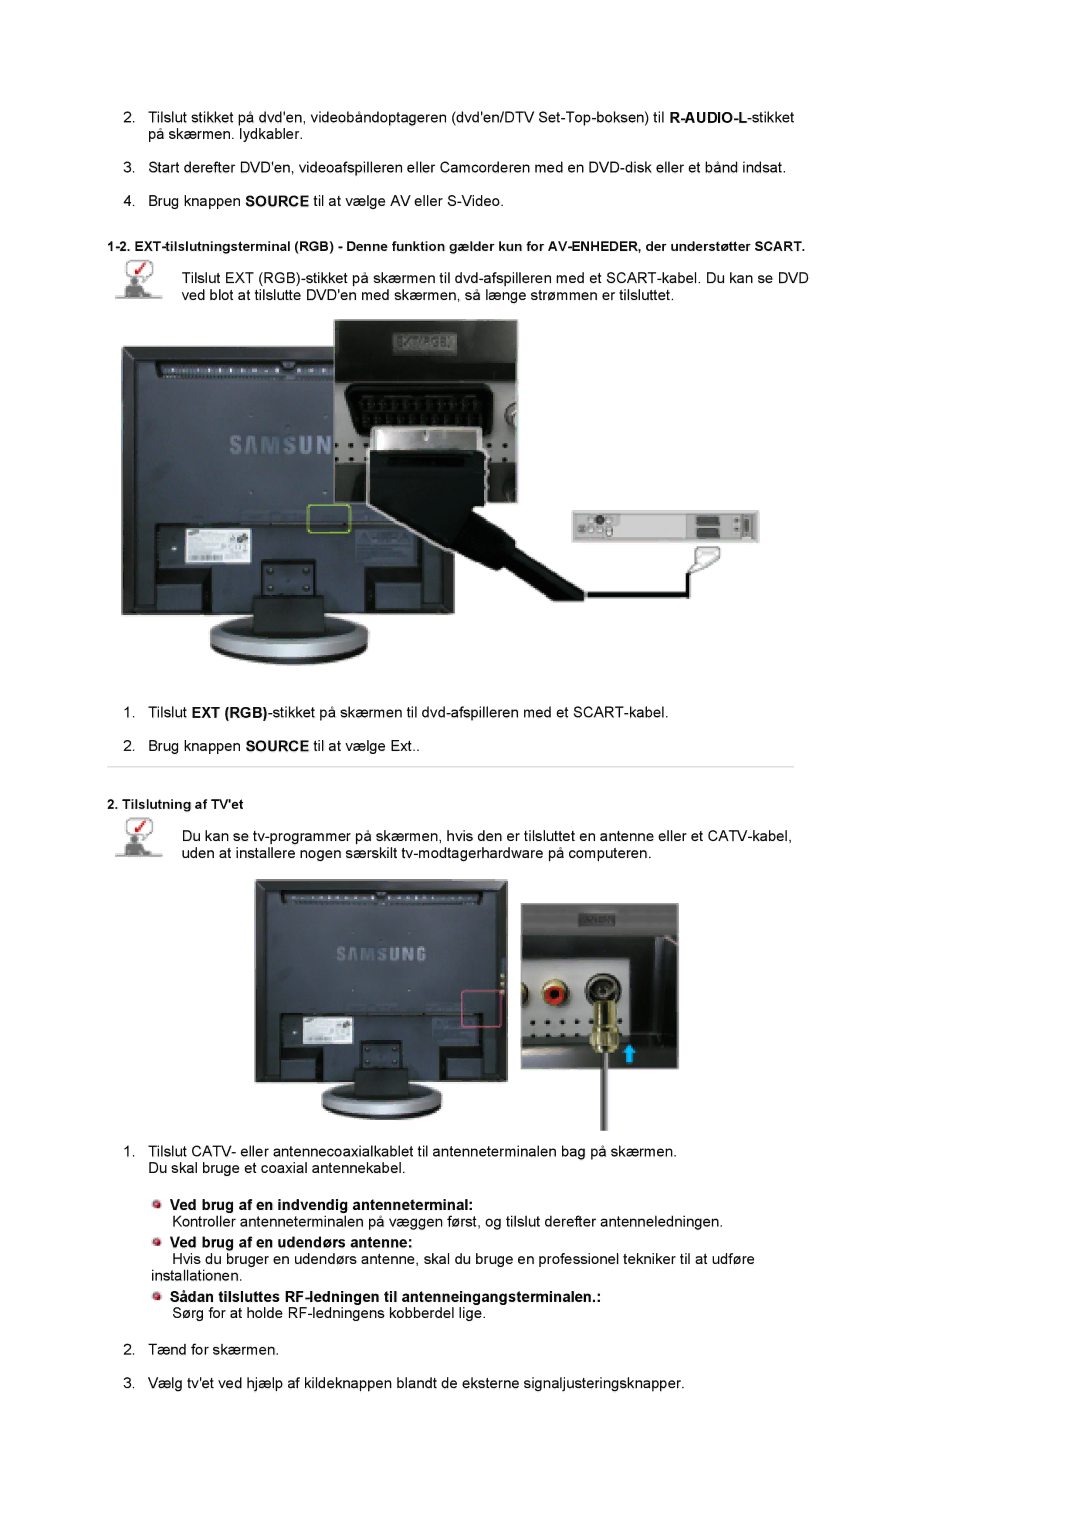 Samsung LS19DOCSS/EDC, LS19DOWSSZ/EDC manual Ved brug af en indvendig antenneterminal, Ved brug af en udendørs antenne 